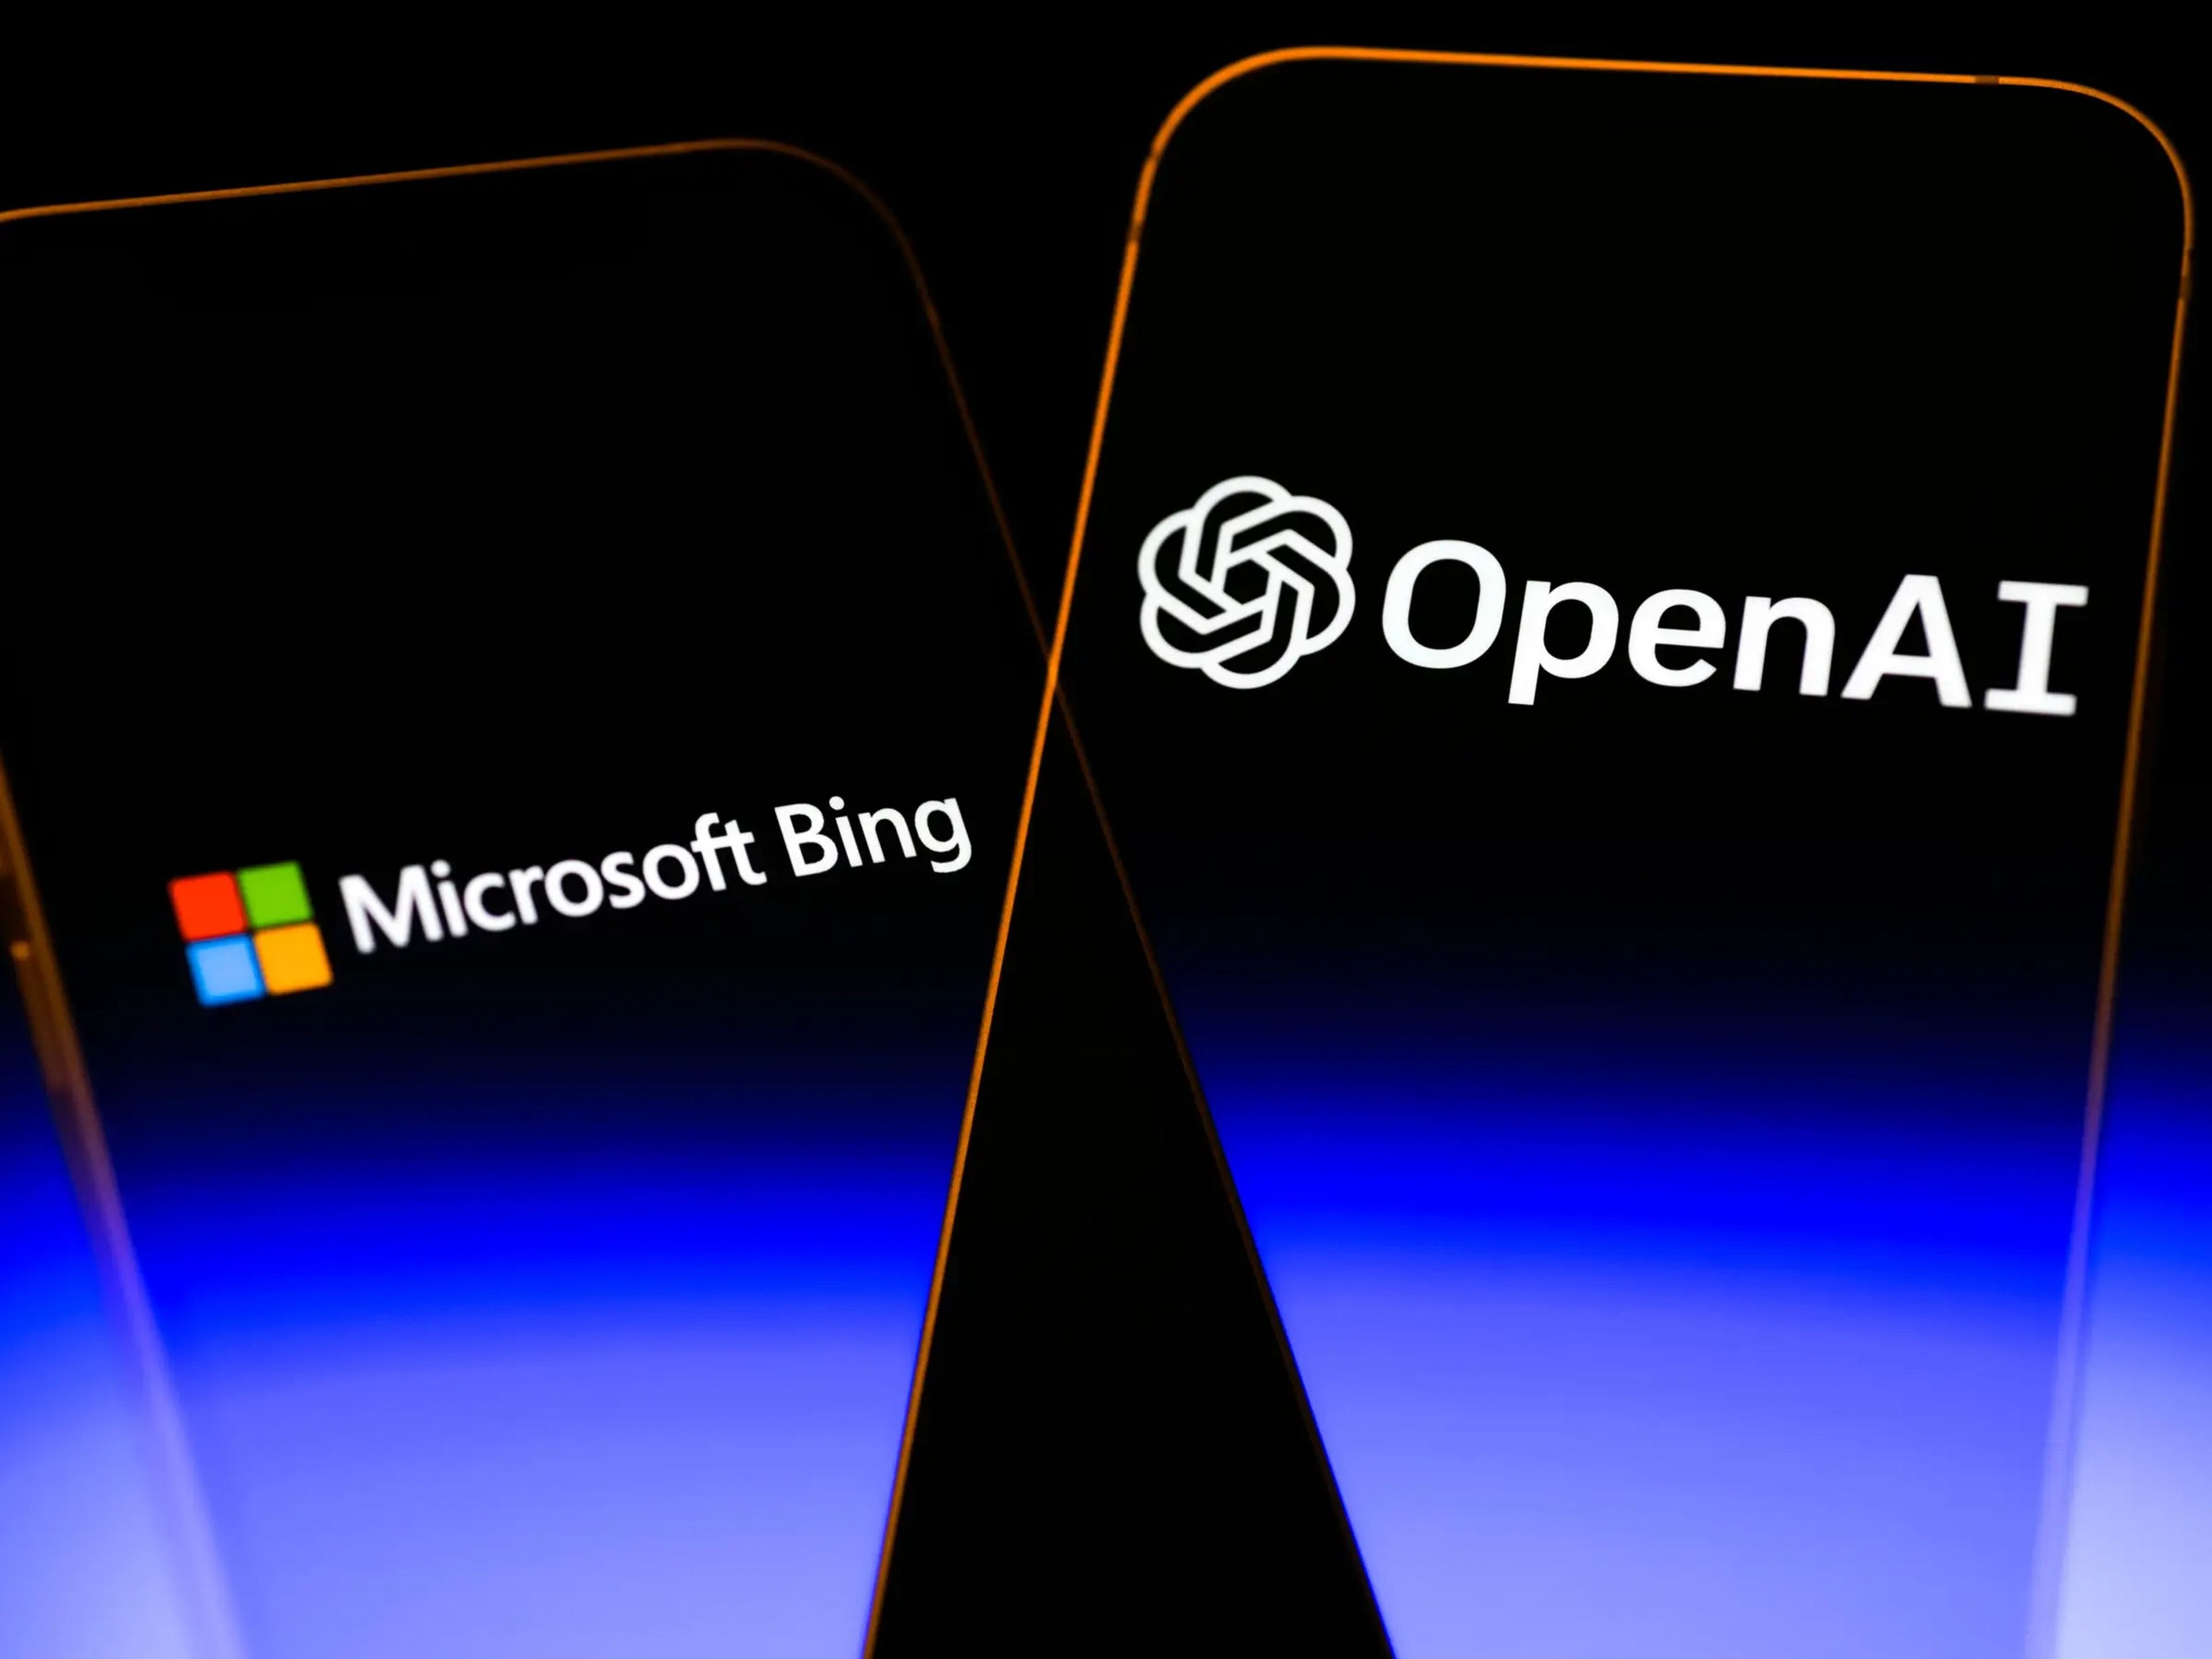 El logo del buscador de Microsoft, Bing, junto al logo de OpenAI, la desarrolladora de ChatGPT.